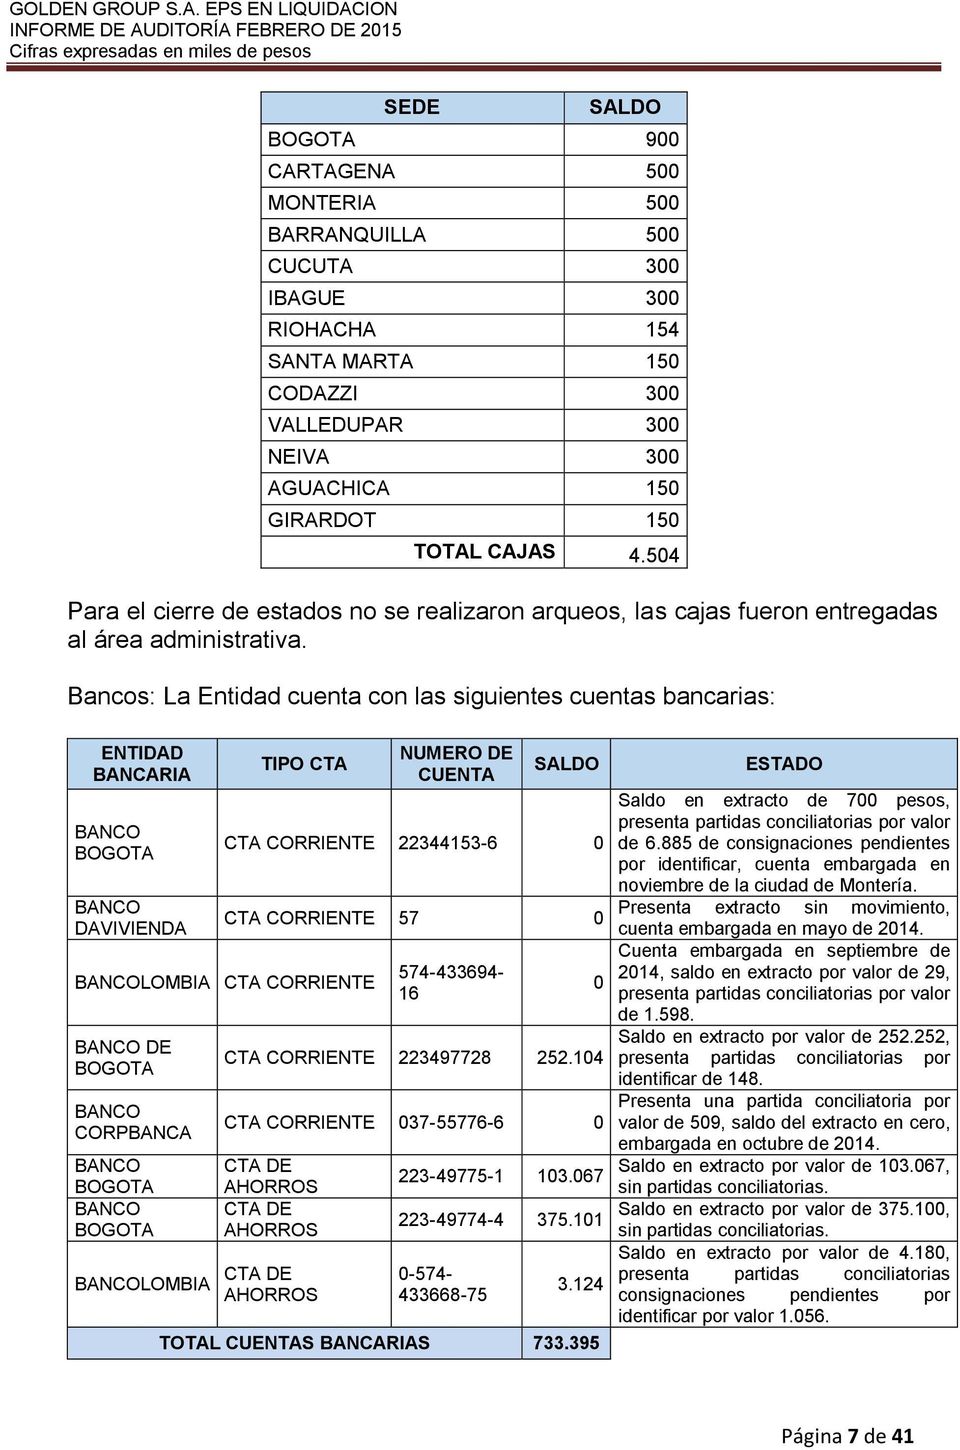 Bancos: La Entidad cuenta con las siguientes cuentas bancarias: ENTIDAD BANCARIA BANCO BOGOTA BANCO DAVIVIENDA TIPO CTA NUMERO DE CUENTA SALDO CTA CORRIENTE 22344153-6 0 CTA CORRIENTE 57 0